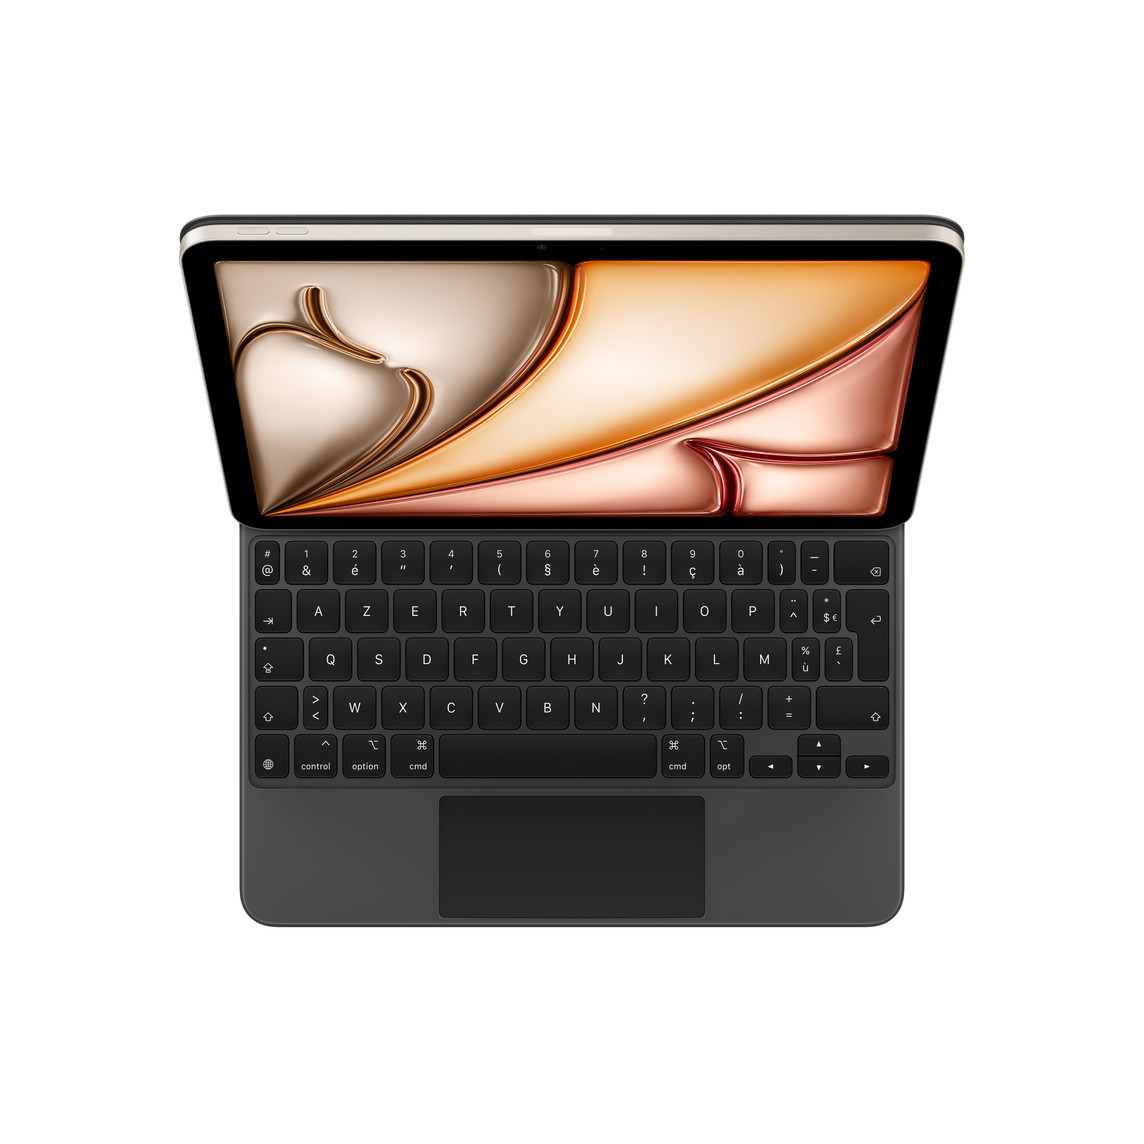 黑色妙控键盘与 iPad Air 相连，展示白色键帽文字的黑色按键、呈倒 T 形排列的方向键和内置触控板。